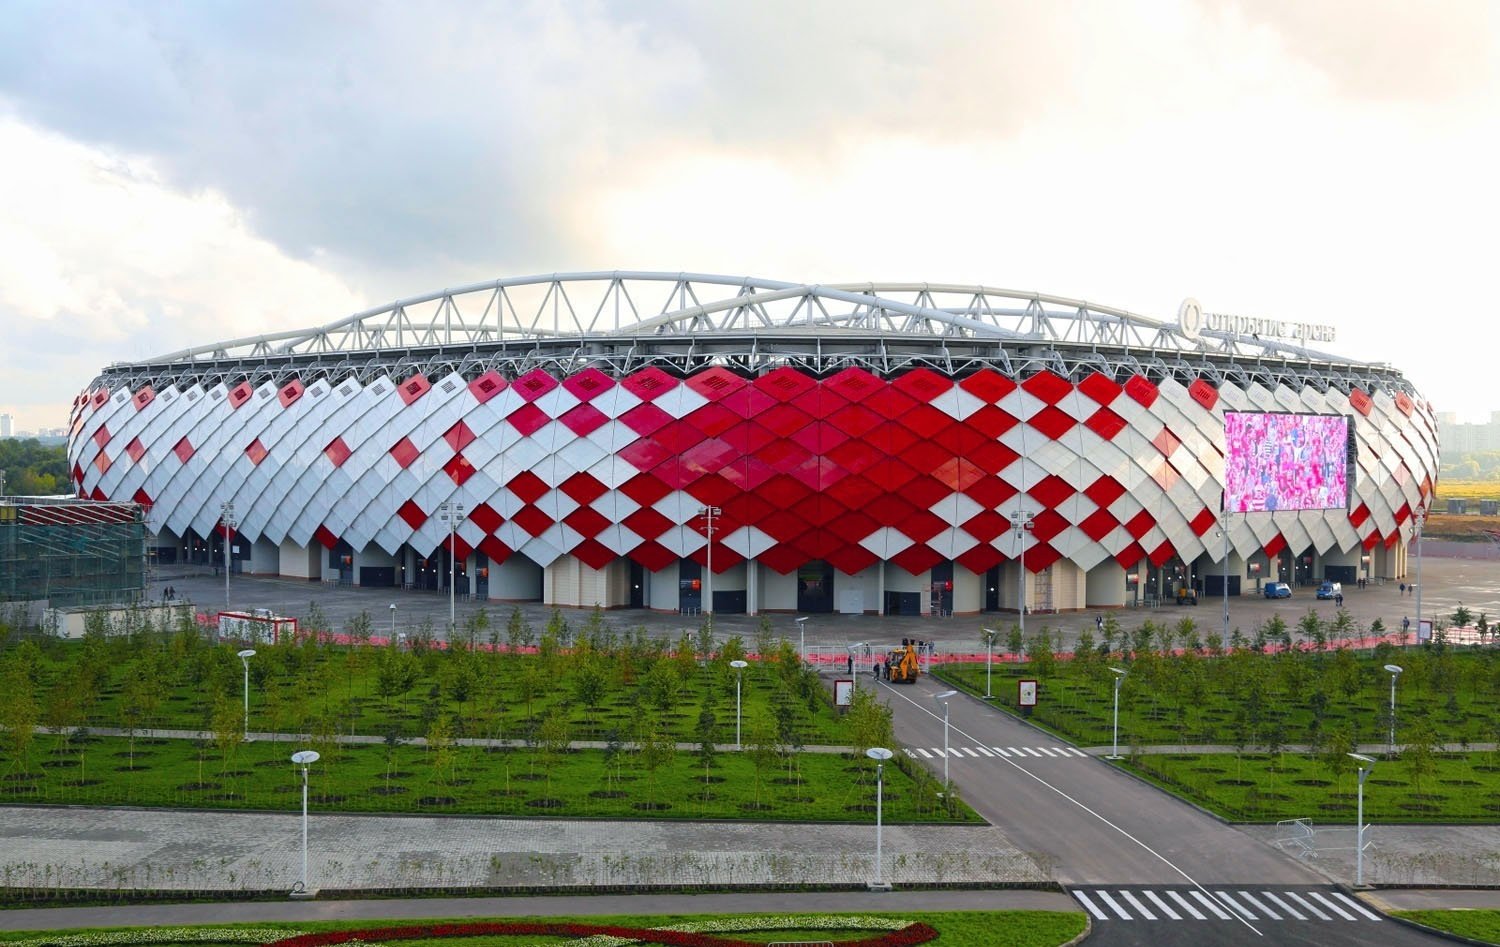 Москва арена